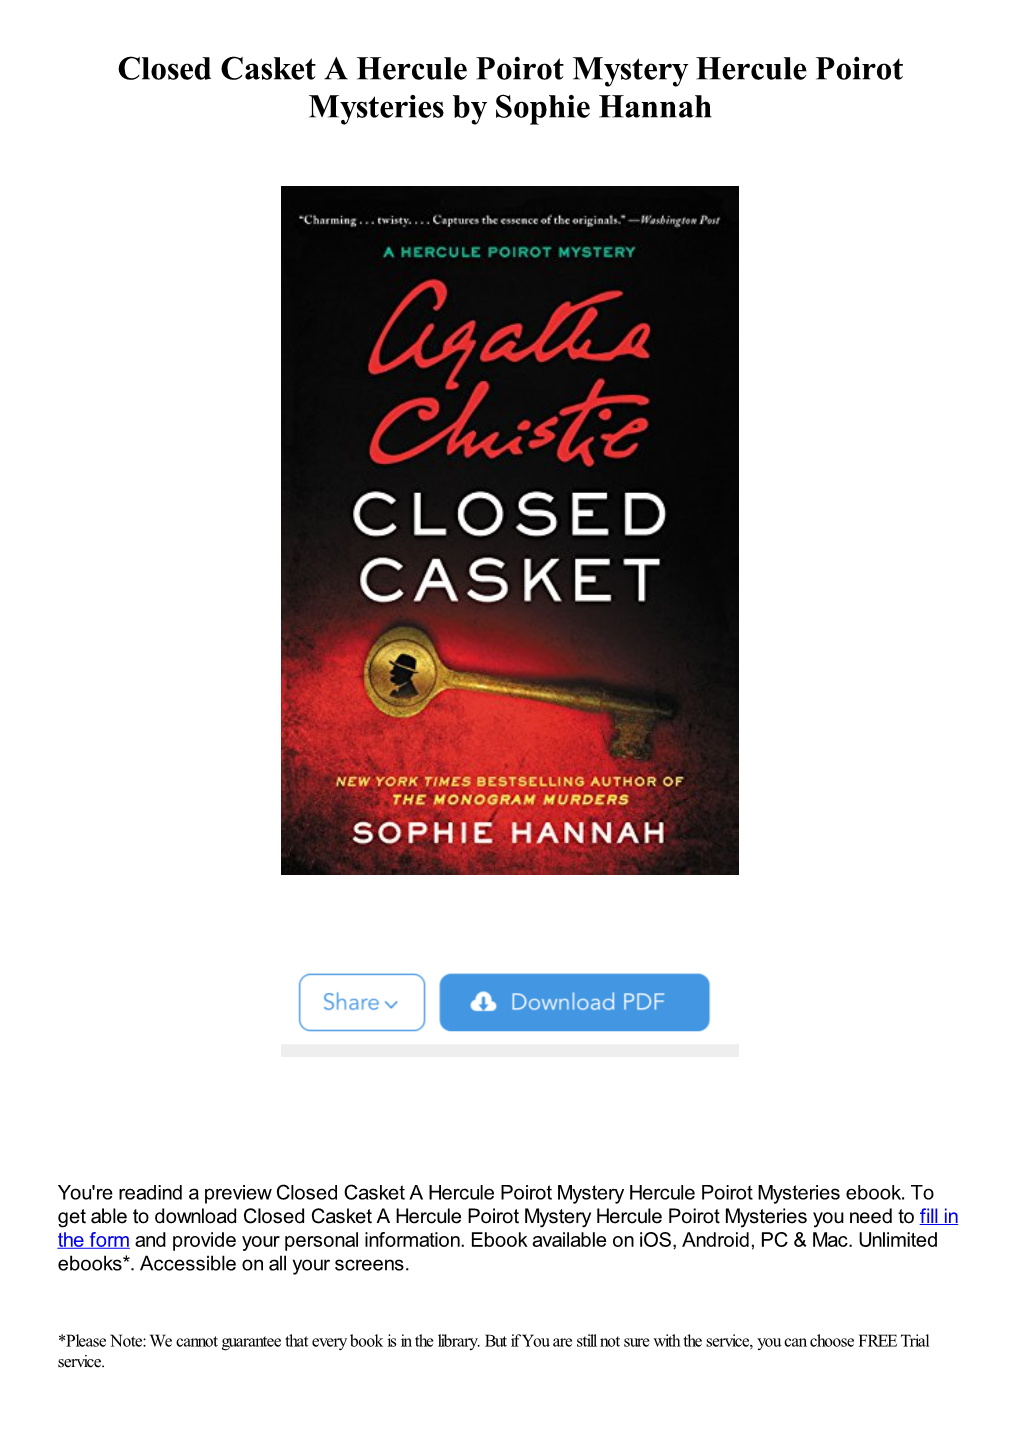 Closed Casket a Hercule Poirot Mystery Hercule Poirot Mysteries by Sophie Hannah